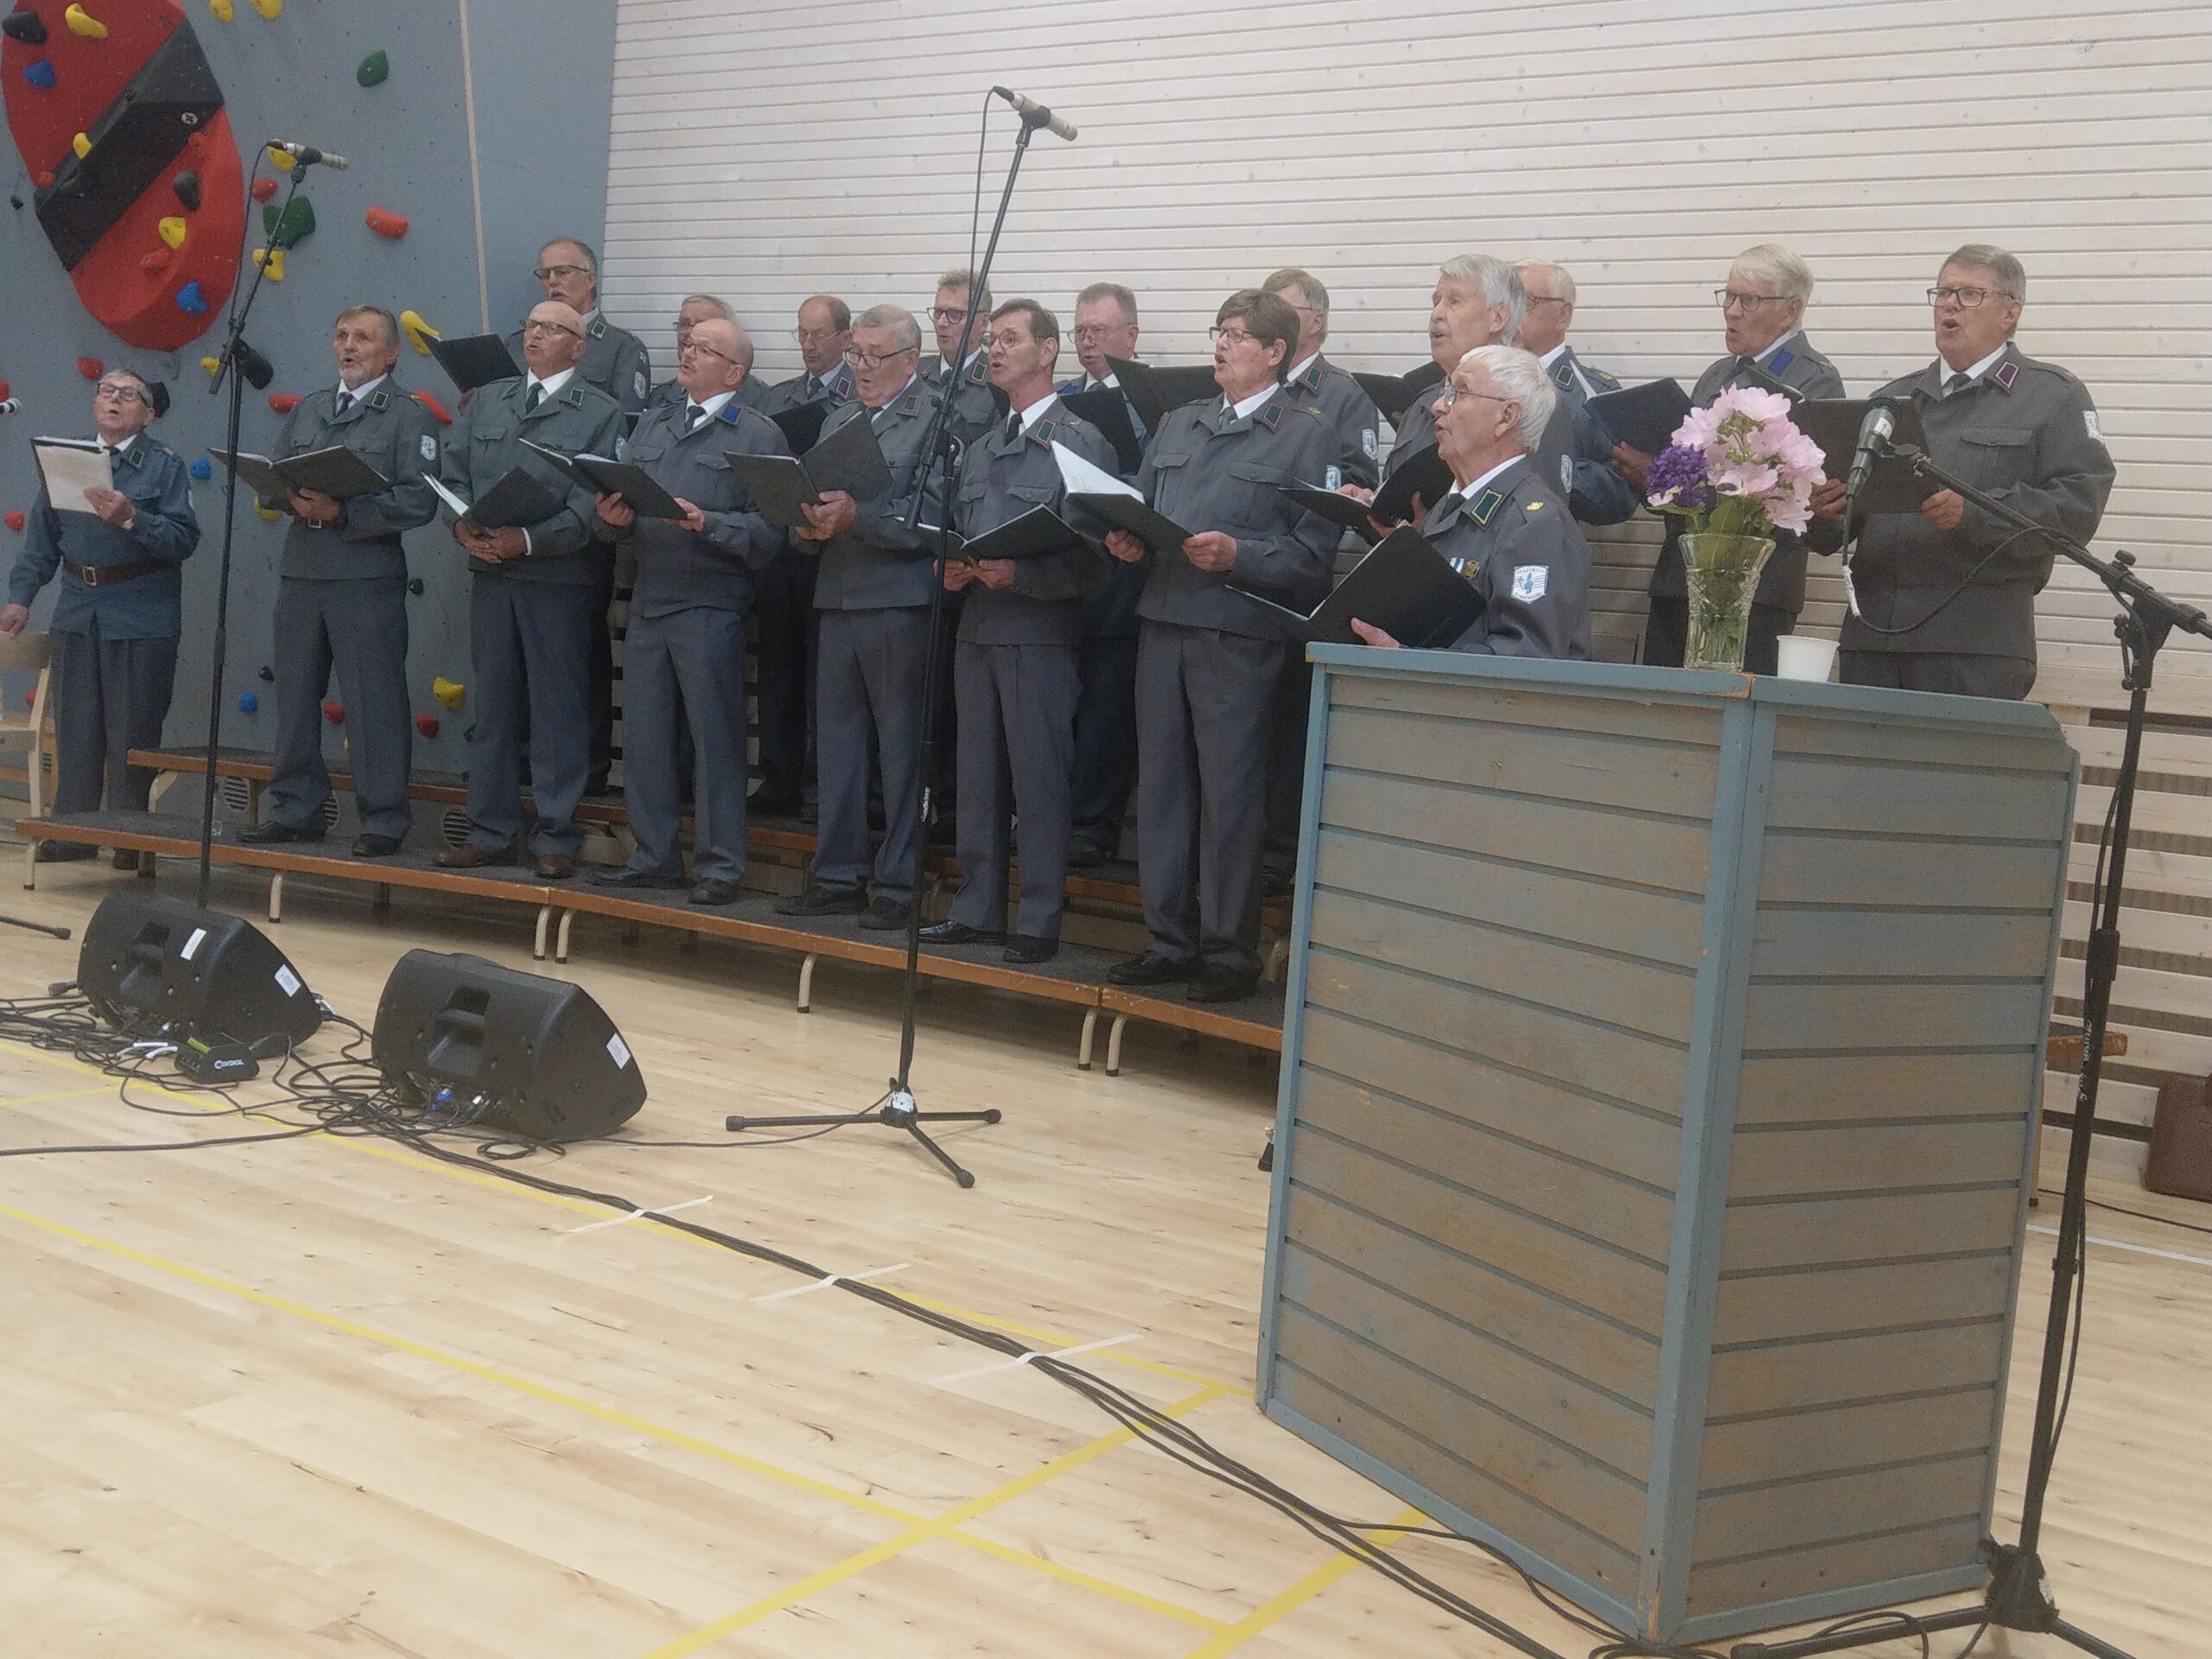 Korsukuoron 25-vuotisjuhlakonsertti oli menestys. Kuoro lauloi itsensä yleisön sydämiin Luoma-ahon kylätalolla. Kuva: Markku Harju